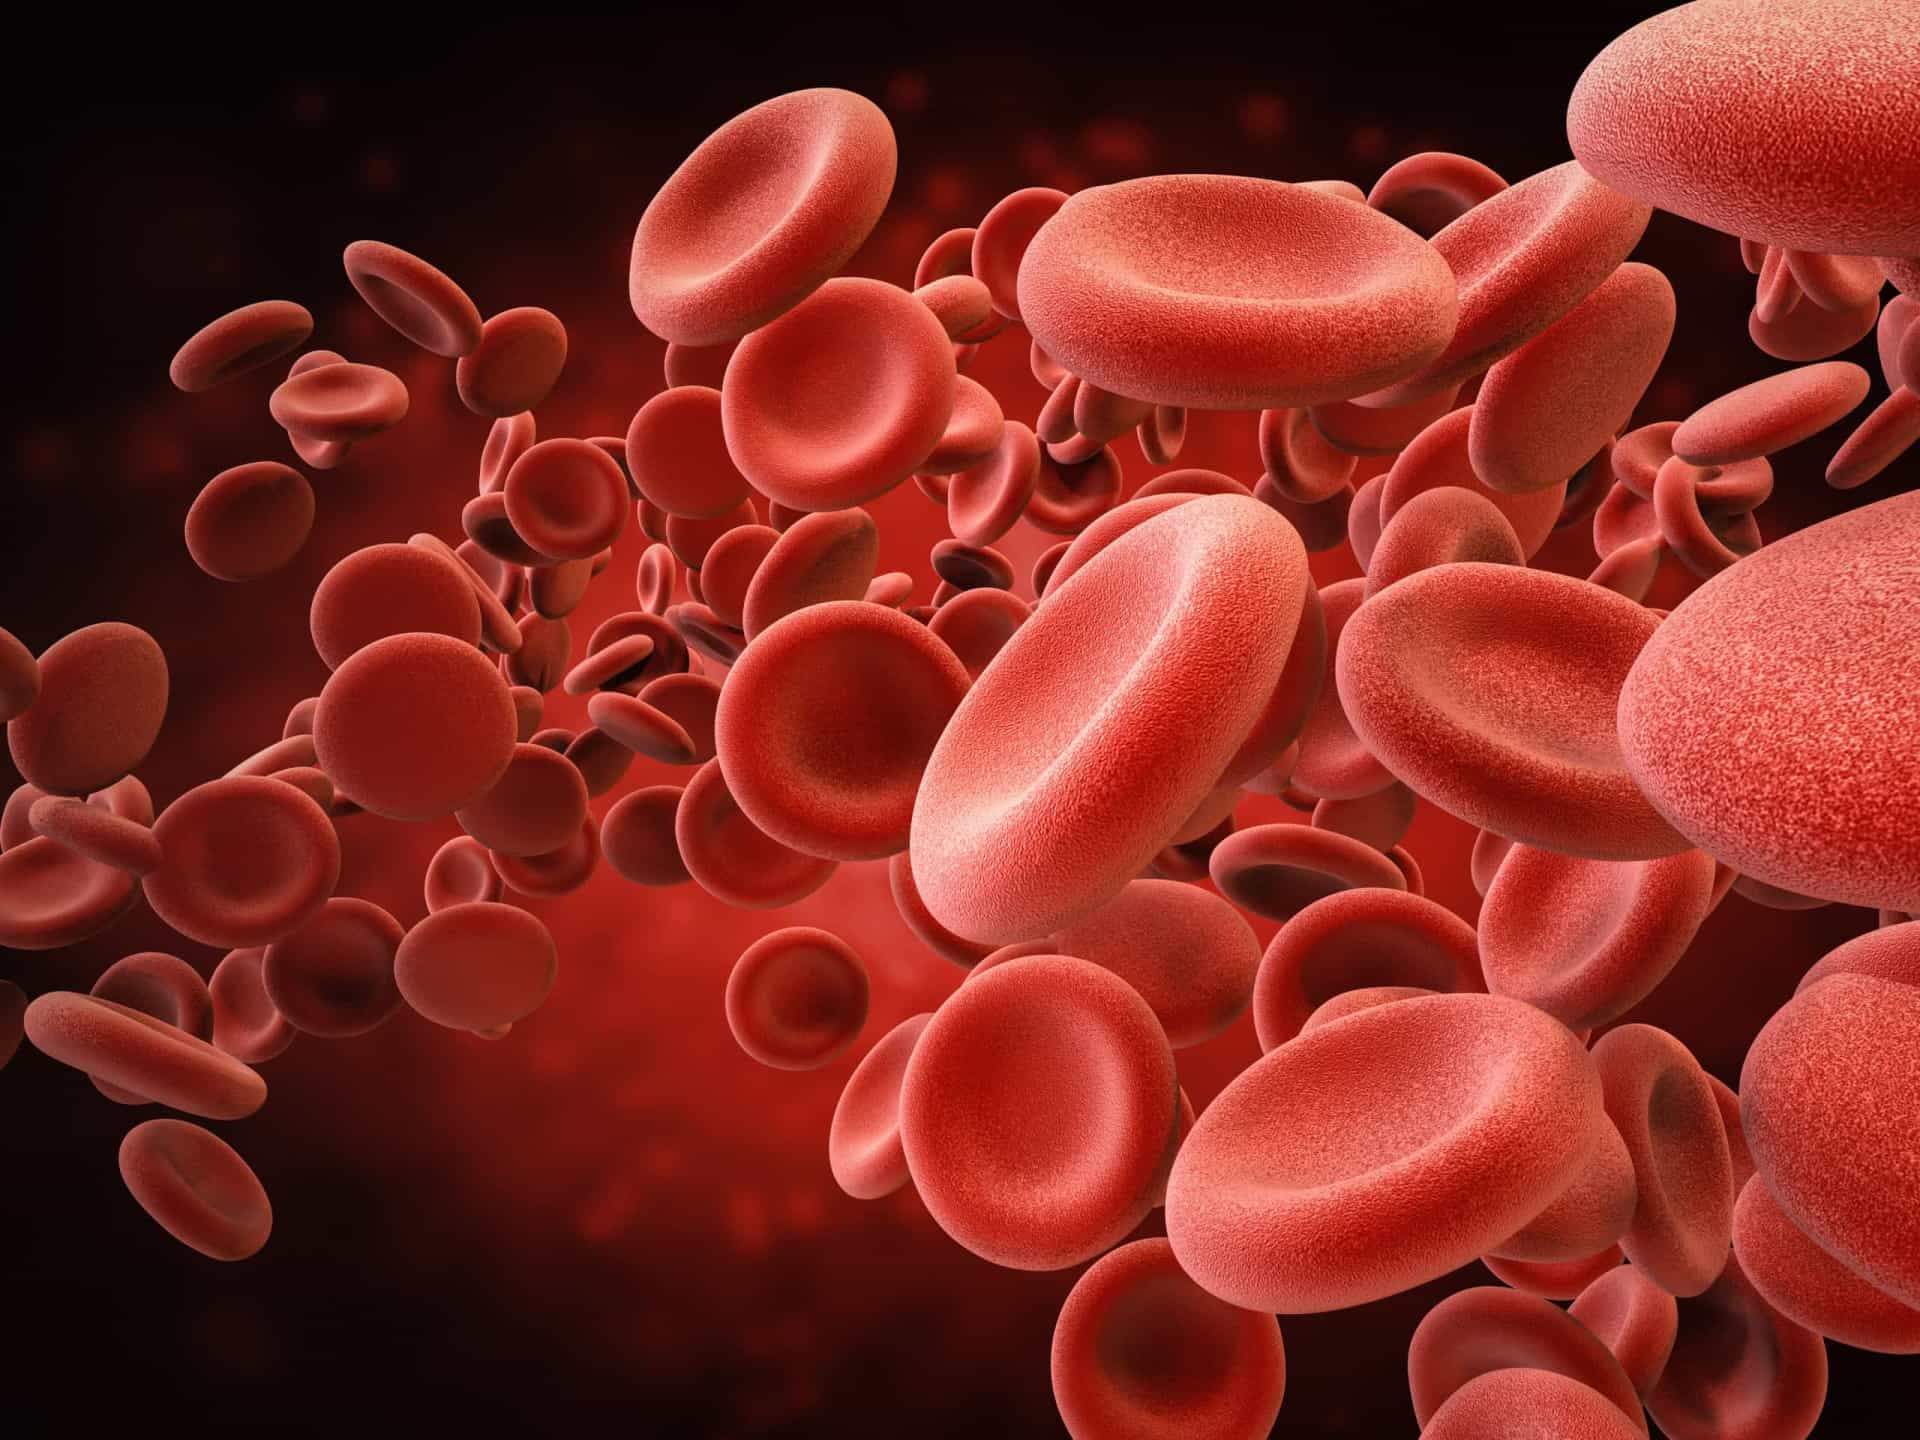 <p>Il sangue è composto per circa il 90% da acqua e la disidratazione può causare l'ispessimento del sangue, che a sua volta comporta un aumento della pressione sanguigna.</p>